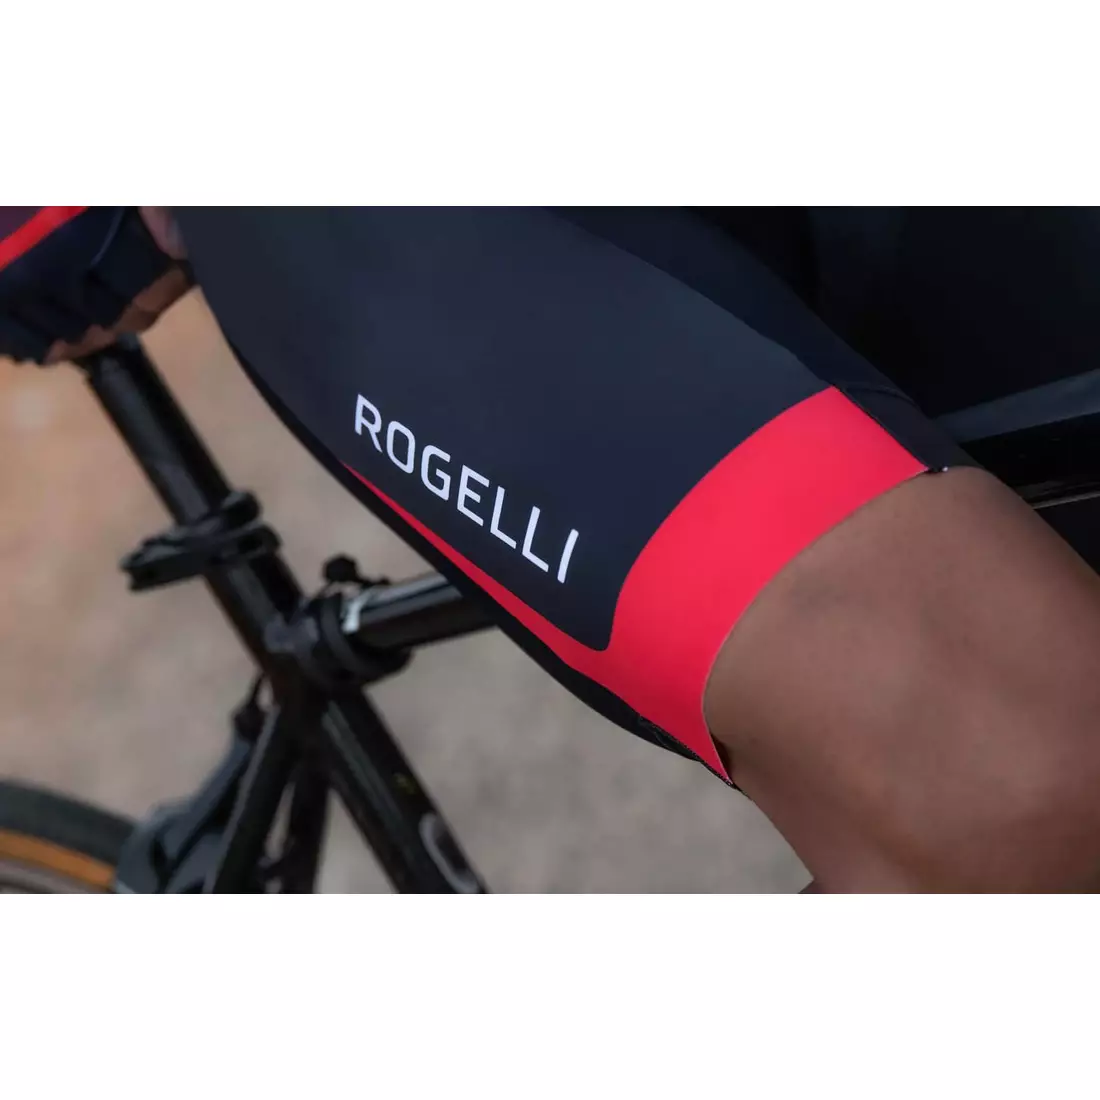 Rogelli FUSE II Radsport-Trägerhose für Herren, Schwarz und Rot